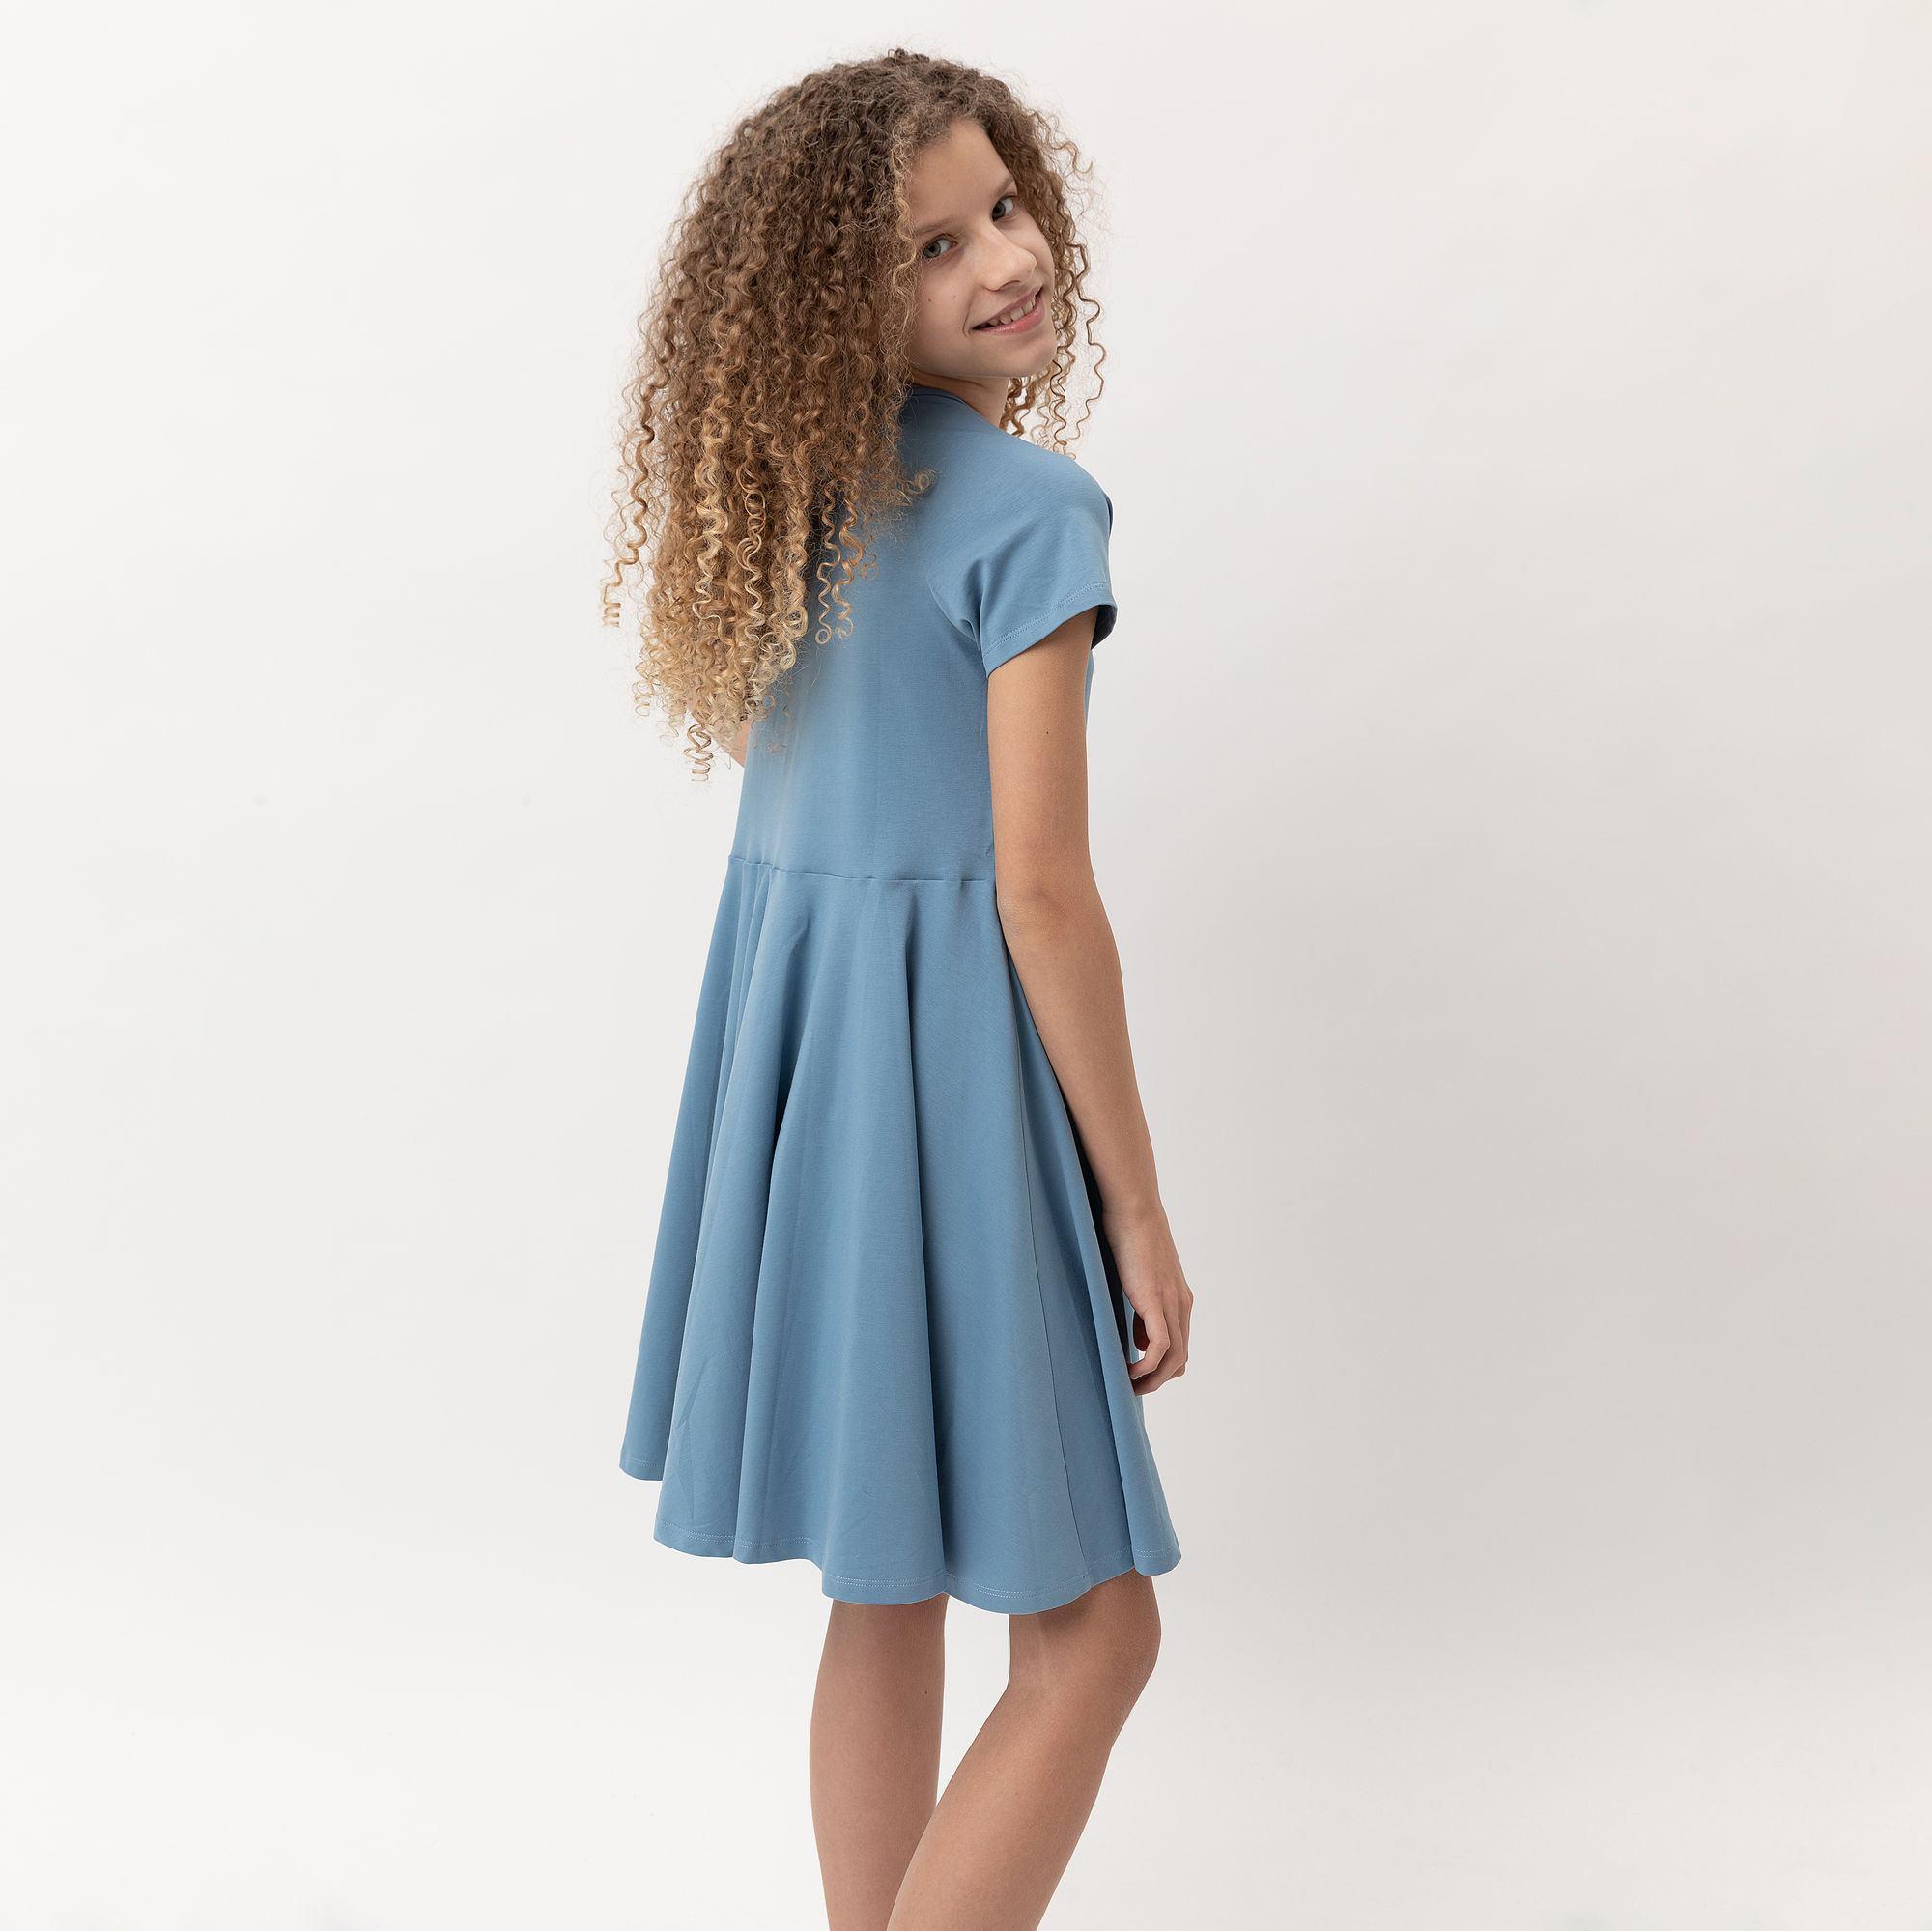 Błękitna sukienka z krótkim rękawem Junior